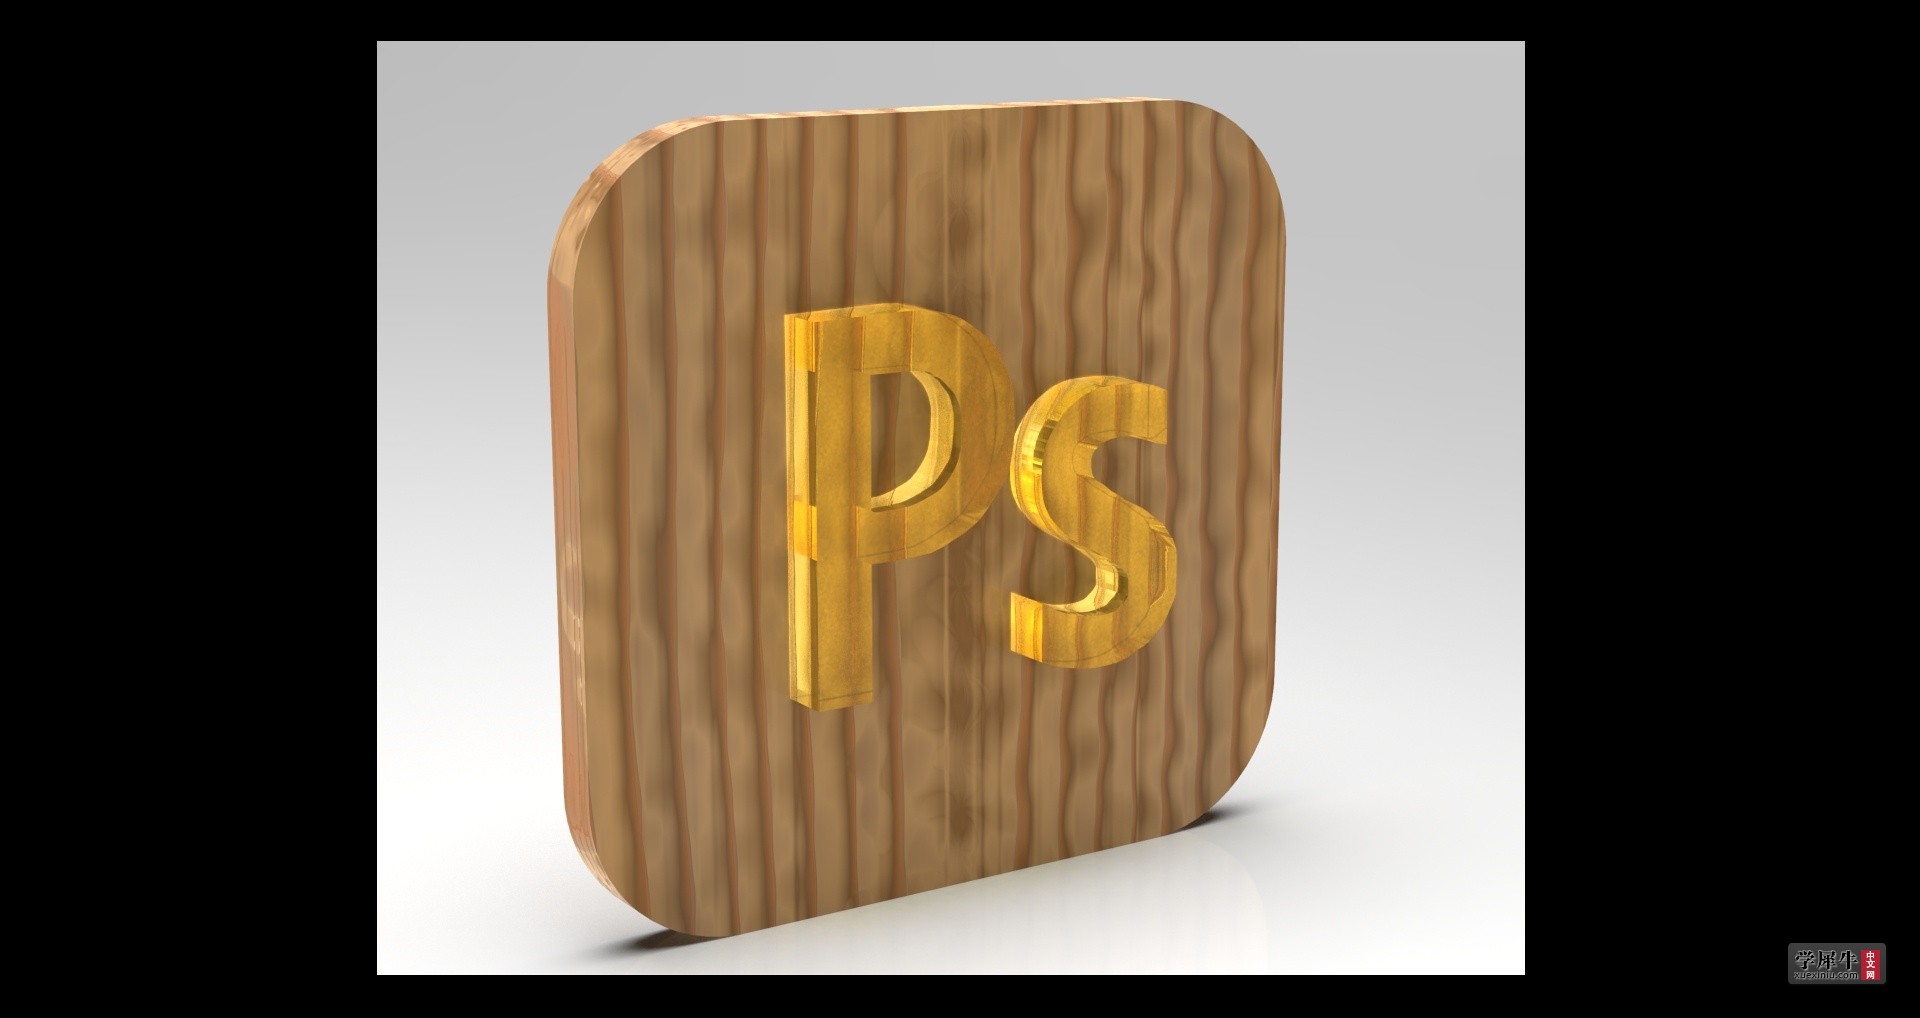 PSlogo3D.jpg